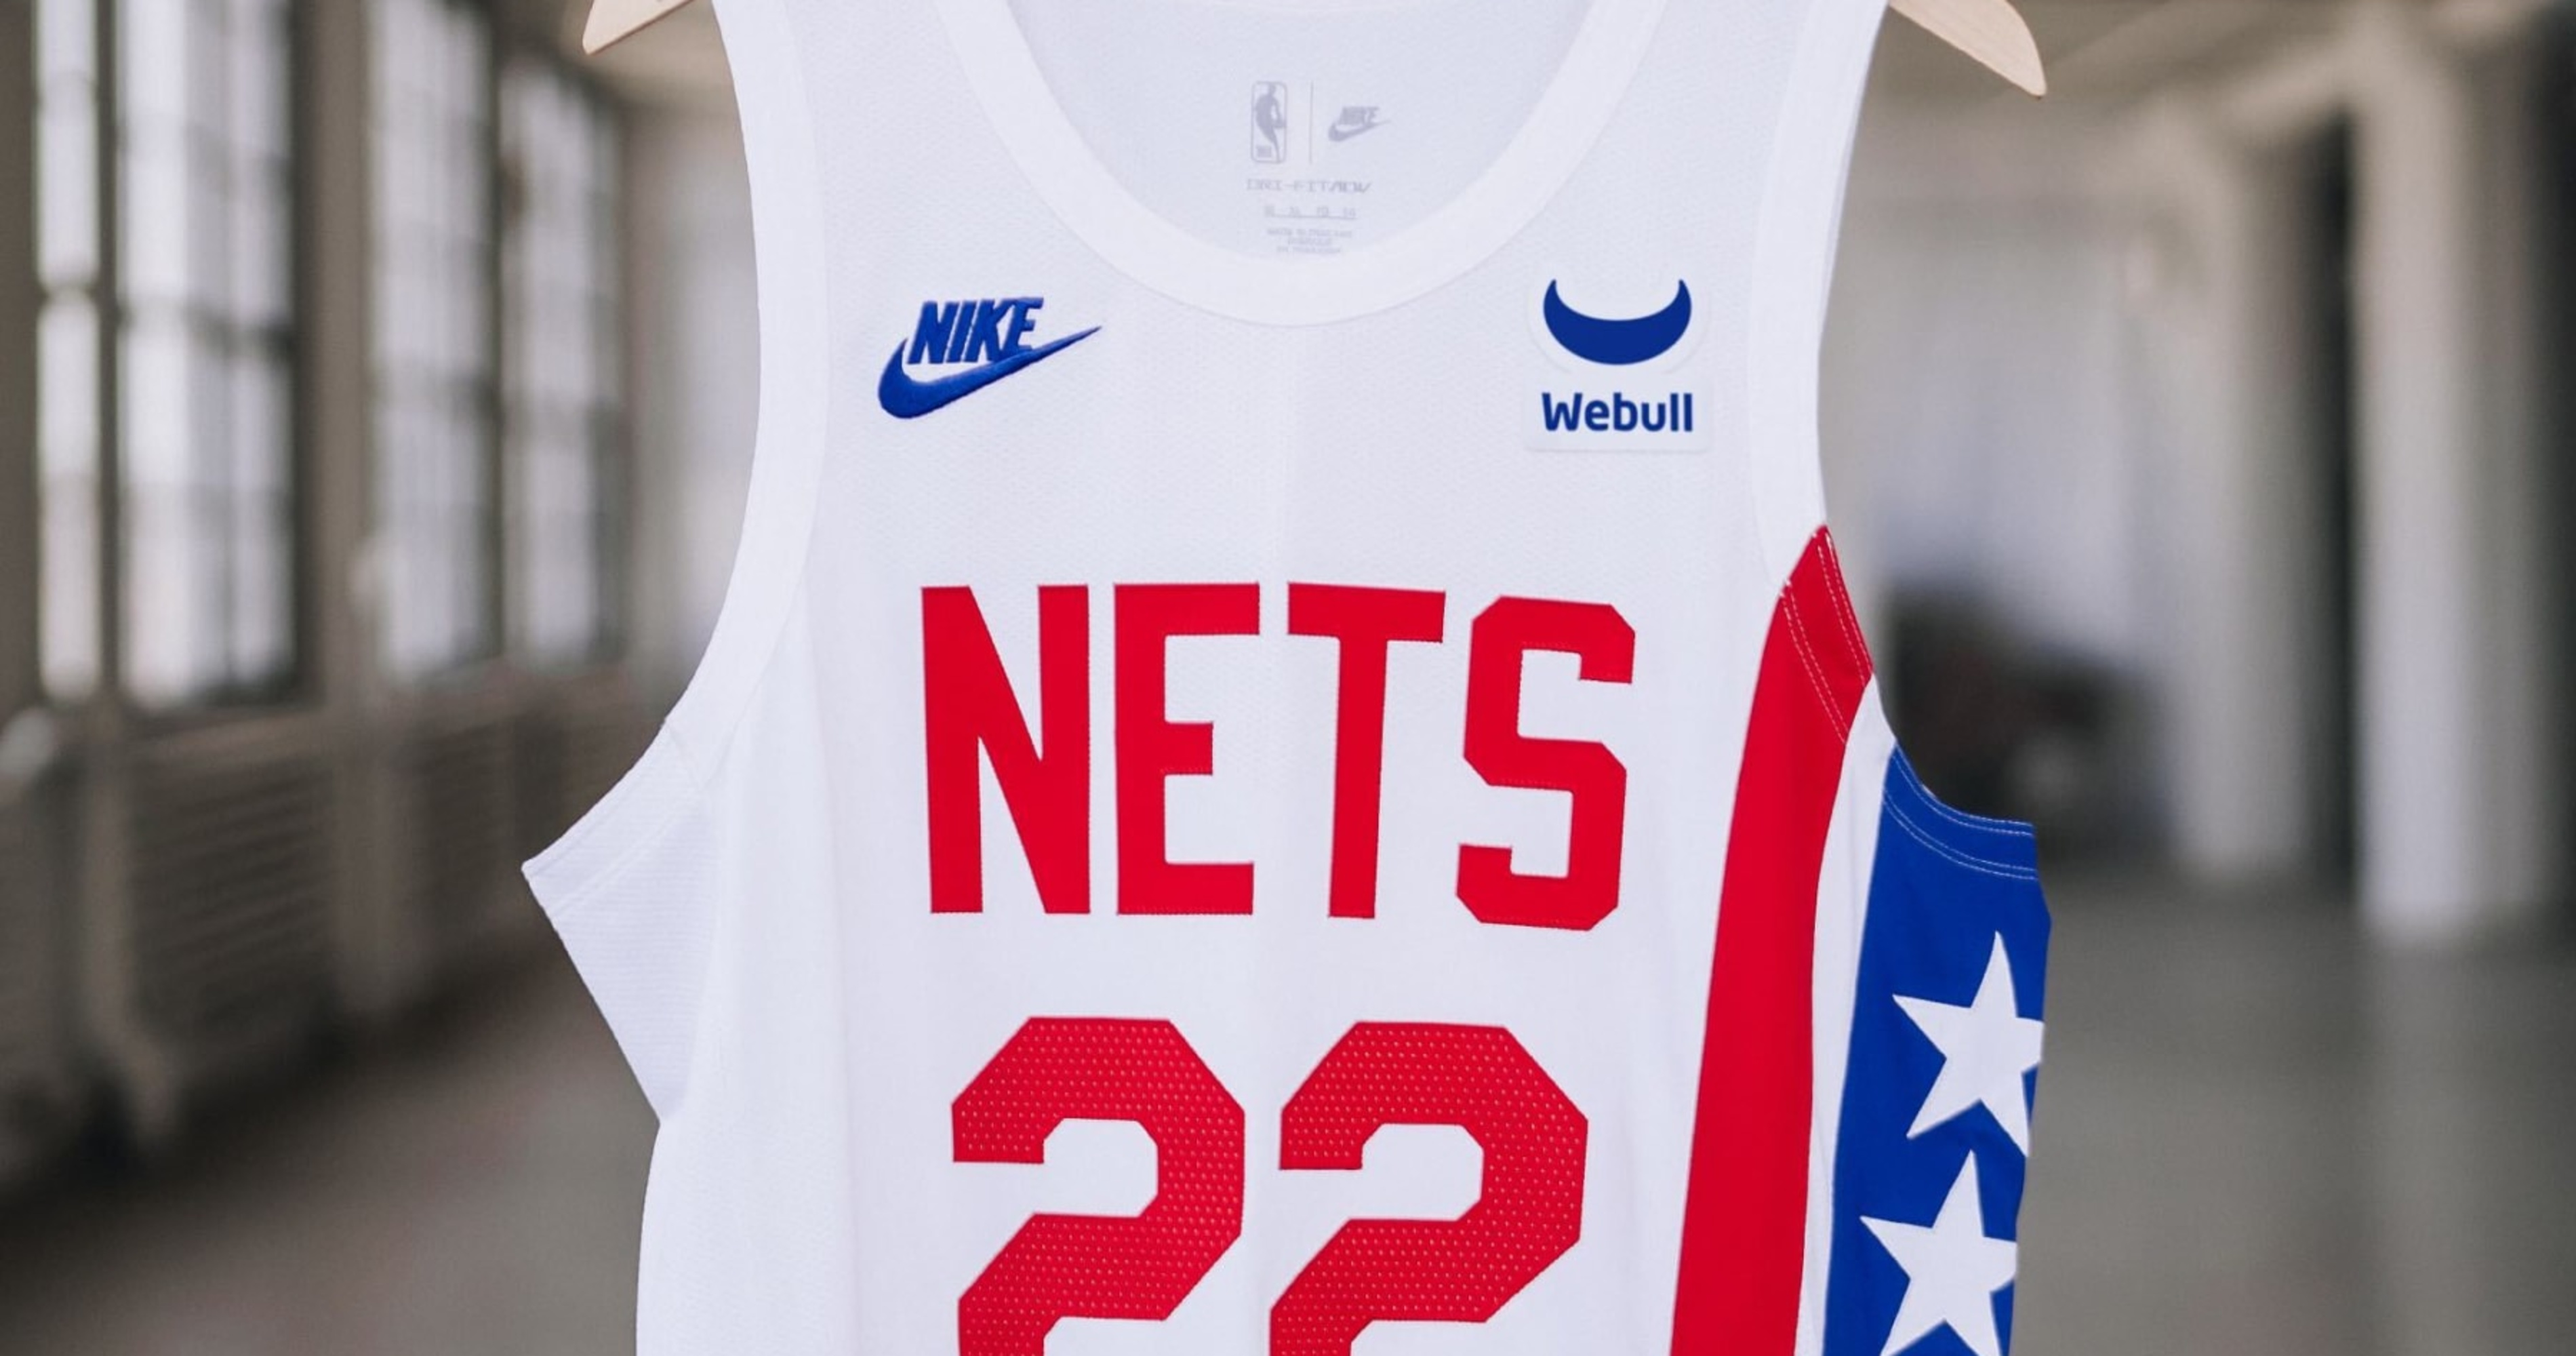 the brooklyn nets jersey